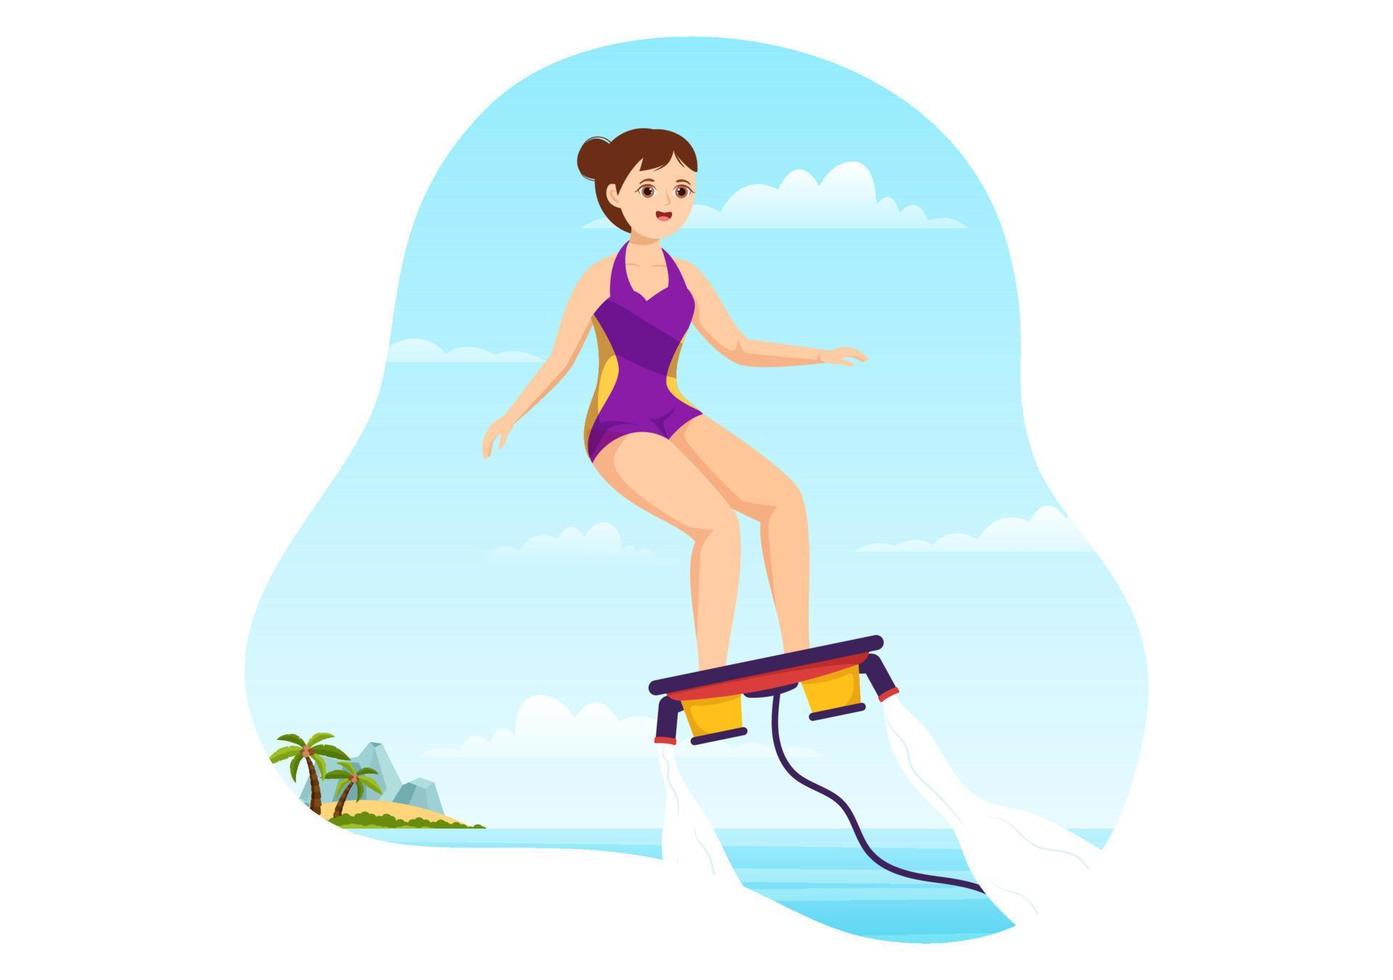 illustration de flyboard avec des personnes faisant du jet pack en vacances d'été à la plage dans des modèles dessinés à la main de dessin animé d'activités de sports nautiques extrêmes plats vecteur